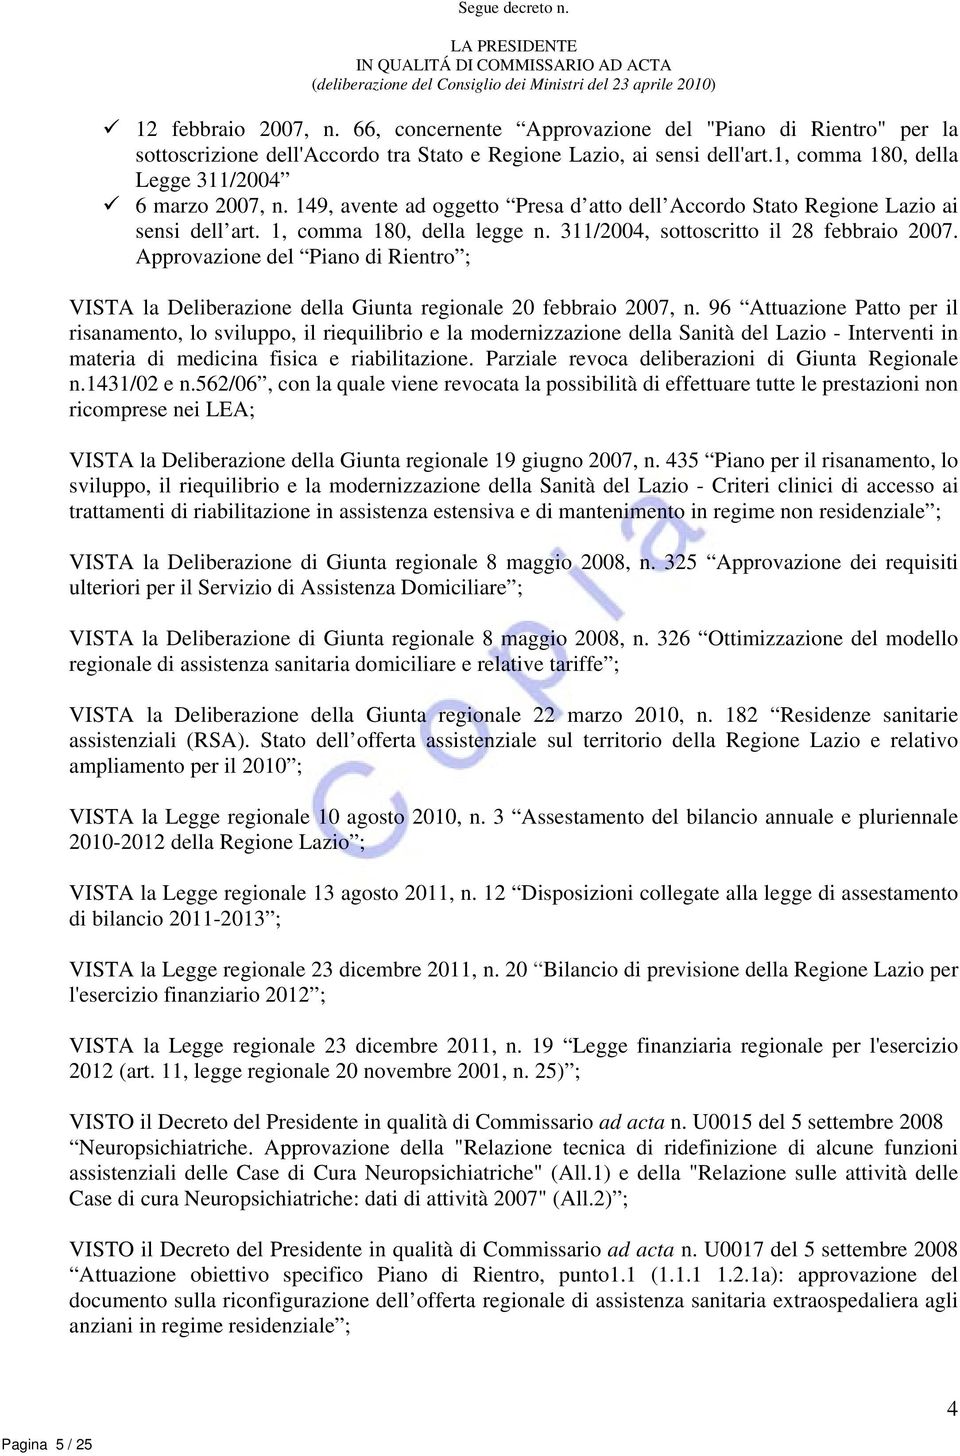 149, avente ad oggetto Presa d atto dell Accordo Stato Regione Lazio ai sensi dell art. 1, comma 180, della legge n. 311/2004, sottoscritto il 28 febbraio 2007.